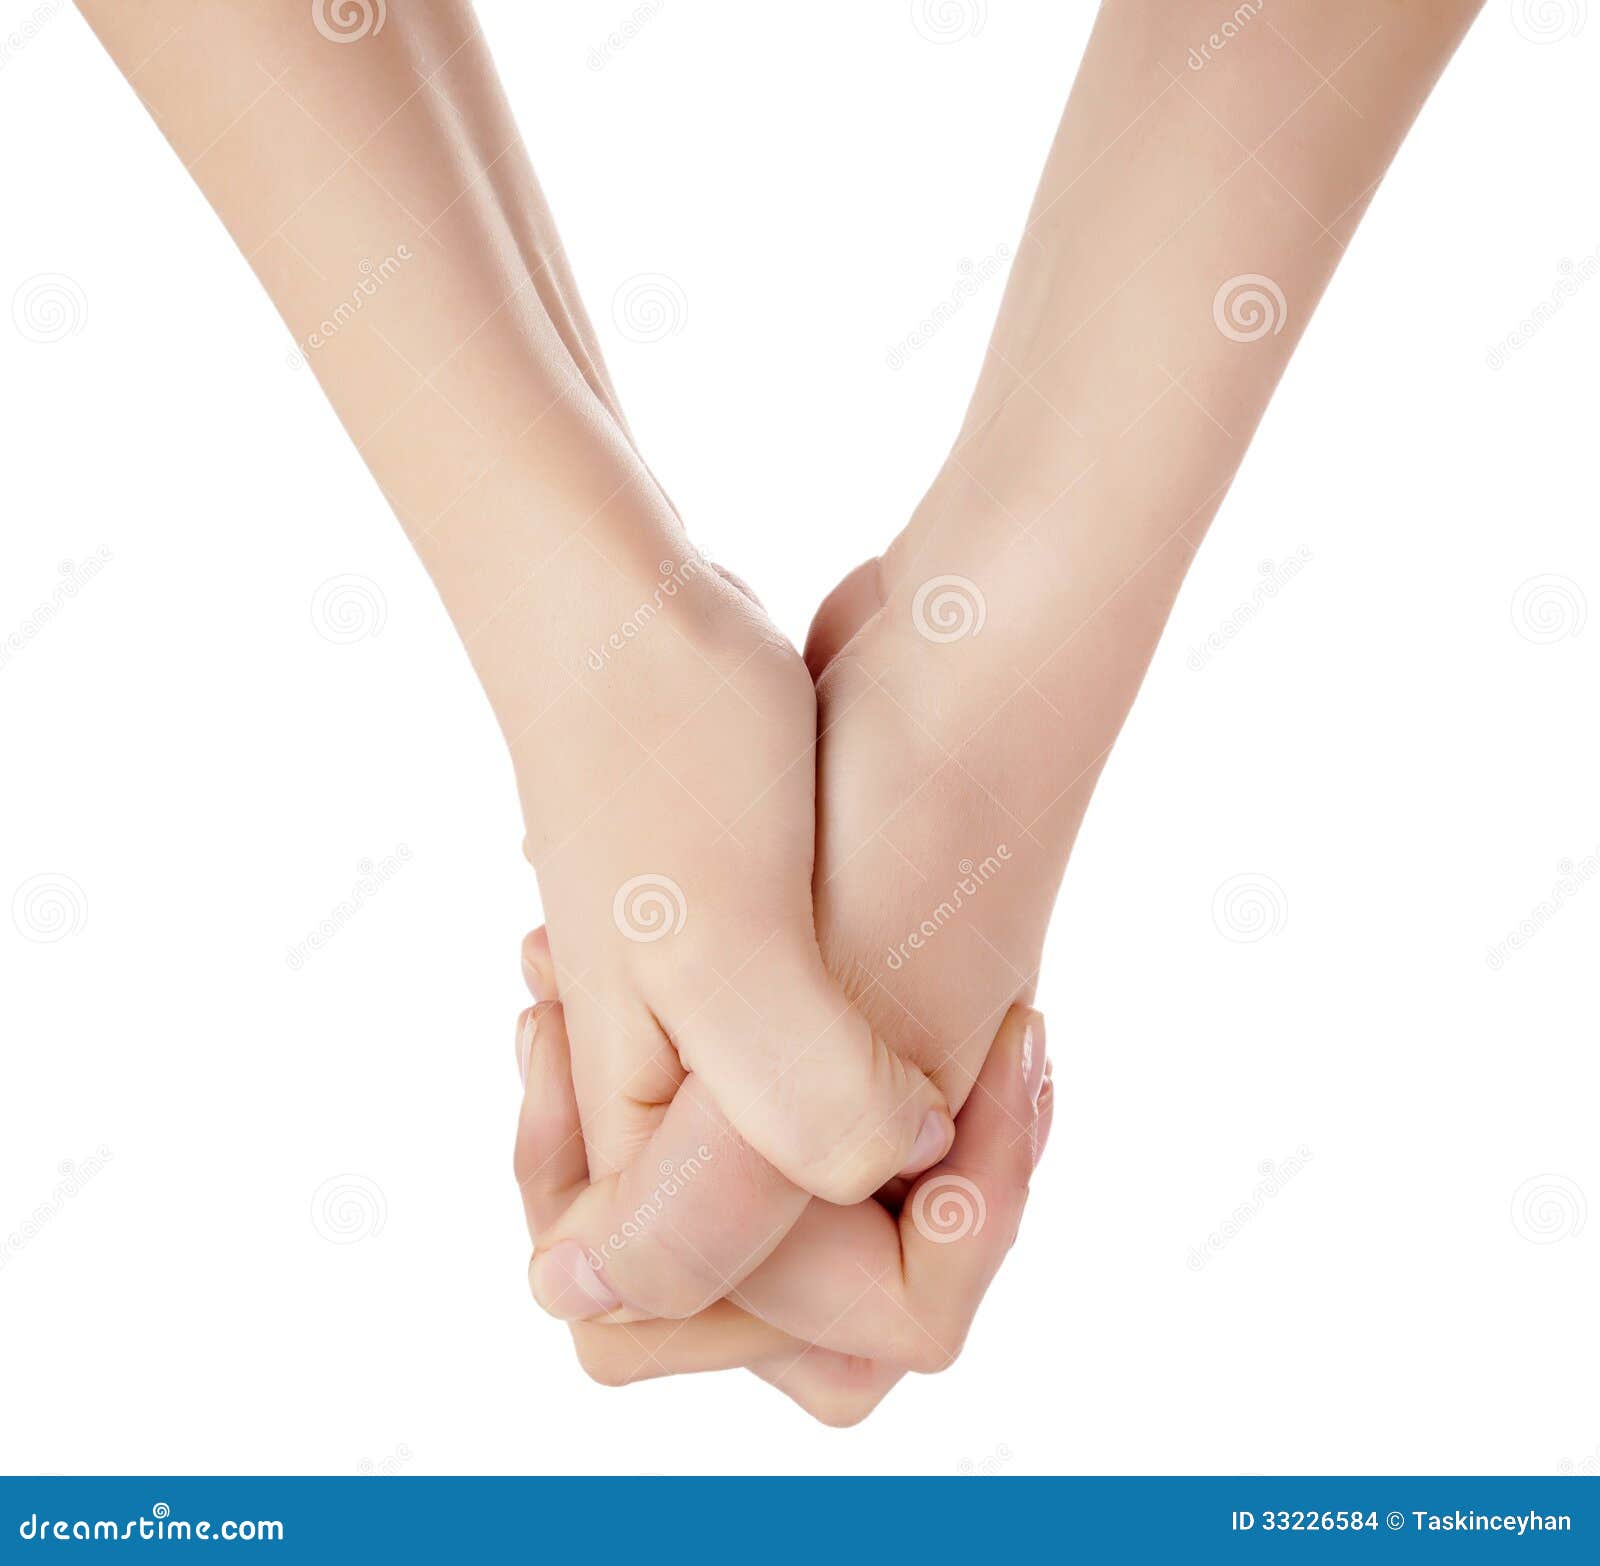 hands congratulating